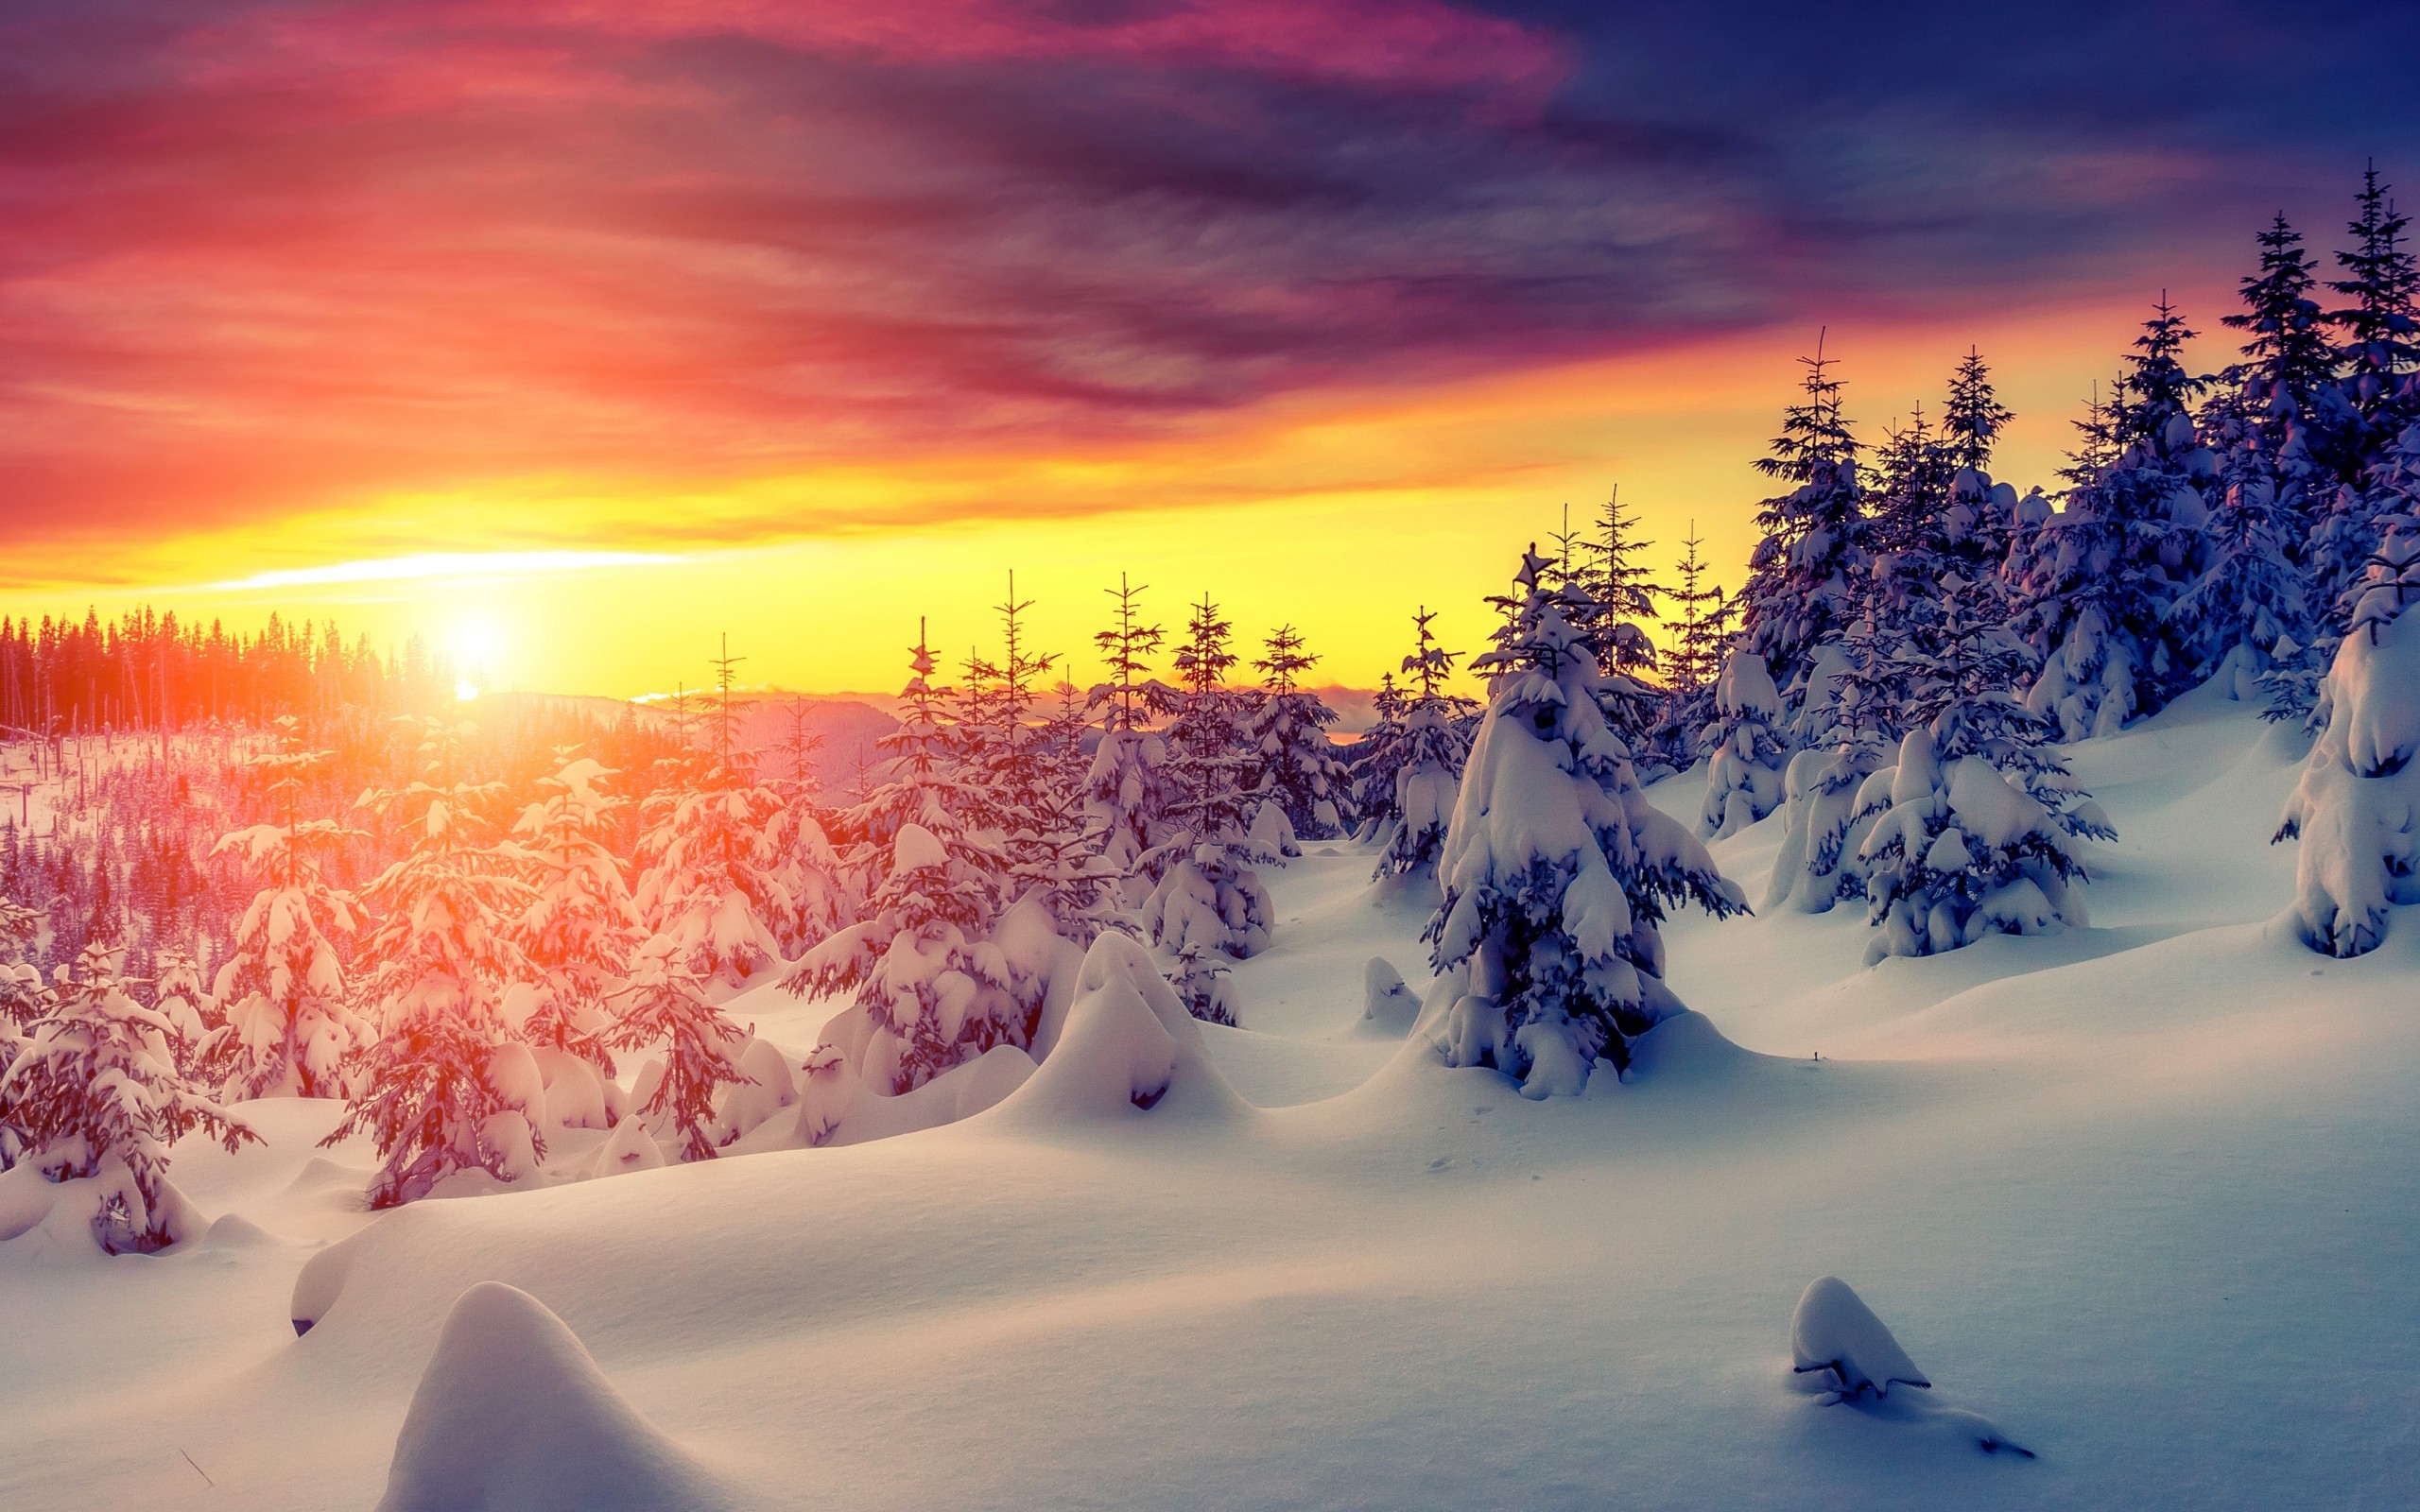 Nếu bạn muốn tìm kiếm một khung cảnh đẹp đến mê hồn thì không thể bỏ qua bức ảnh này. Hoàng hôn mùa đông với tuyết trắng phủ cả mặt đất, tạo nên không khí lãng mạn và thơ mộng. Bức ảnh này sẽ làm cho bạn muốn đắm mình trong đó mãi mãi.